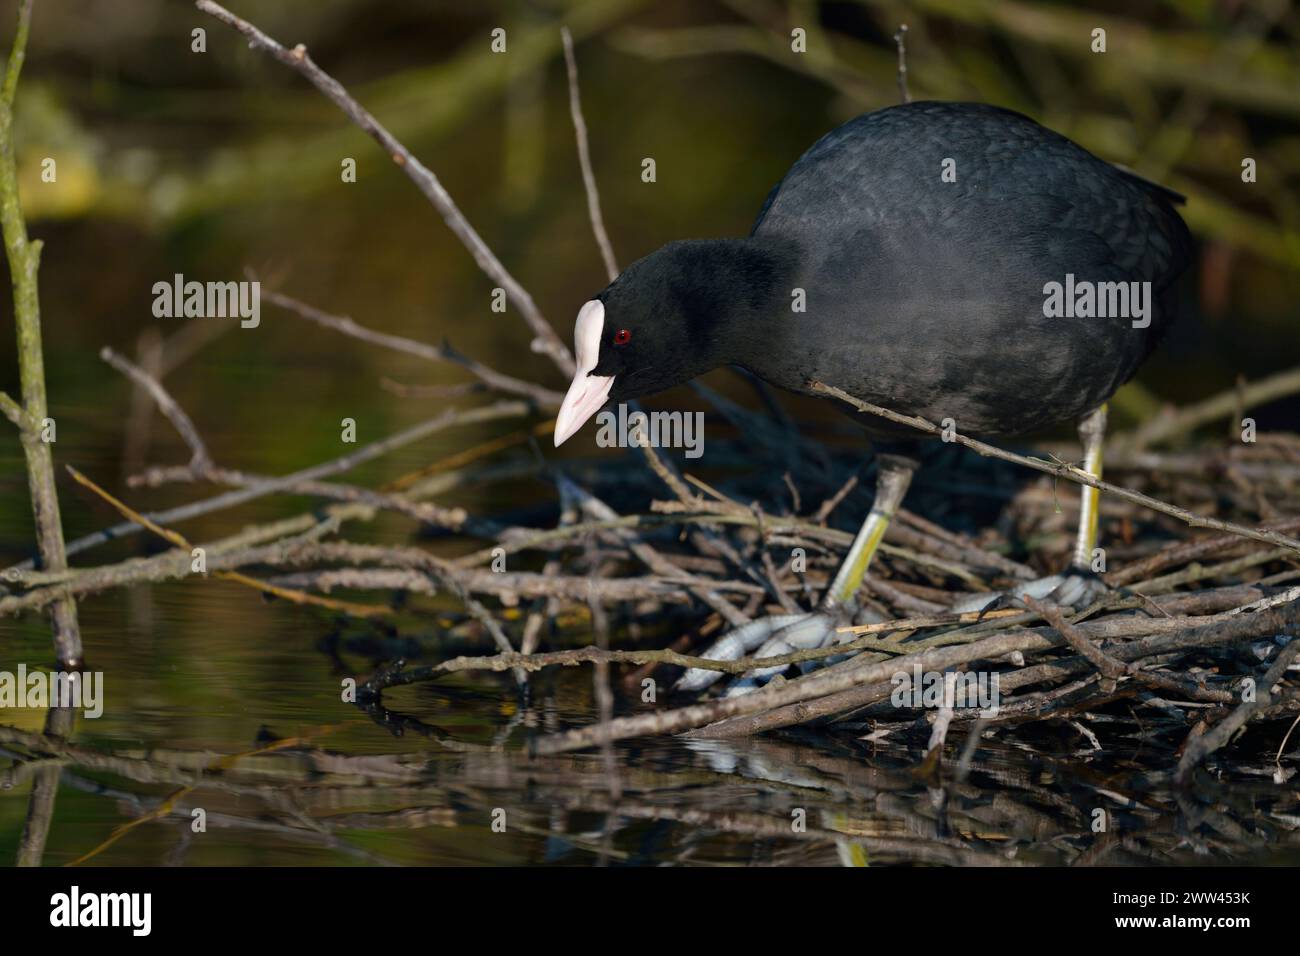 Coot noir / Coot / Coot eurasien ( Fulica atra ) construction de son nid, nidification, construction de nids sous les buissons près du bord de l'eau, faune, Europe. Banque D'Images